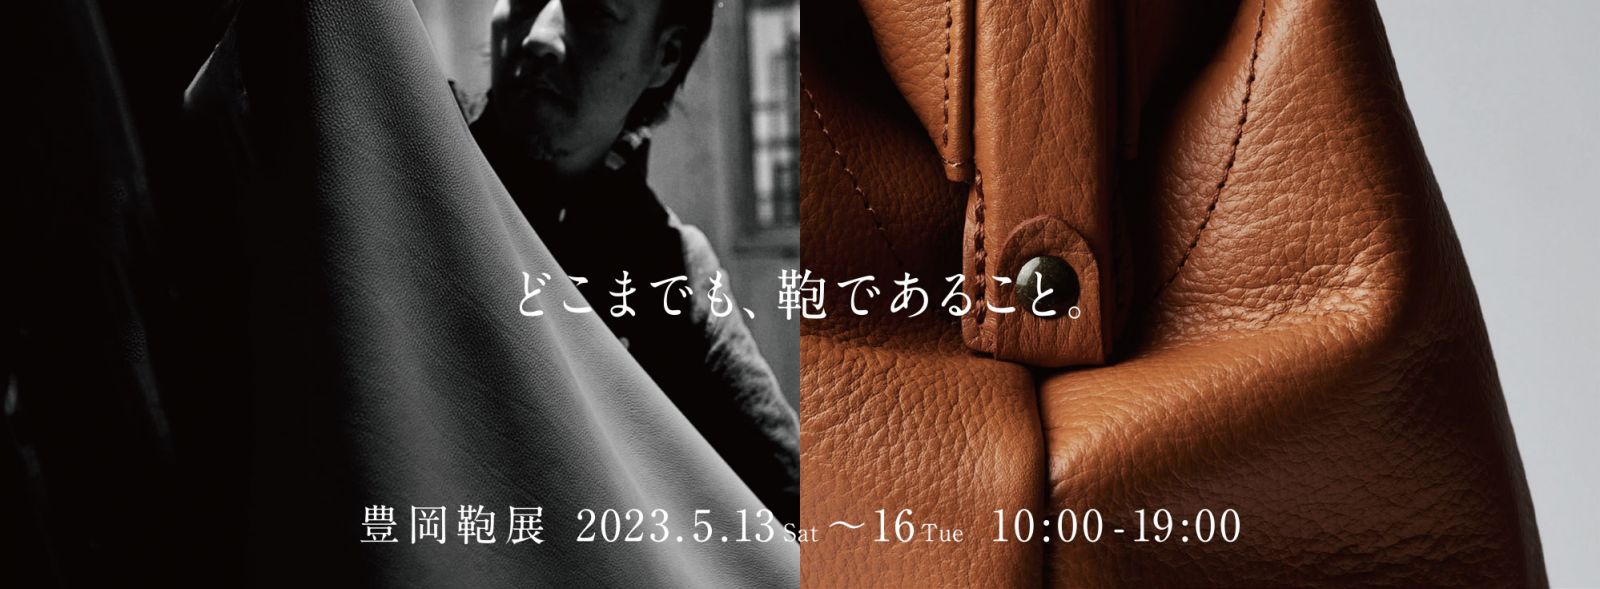 どこまでも、鞄であること 豊岡鞄展 2023.5.13(Sat)〜16(Tue) 10:00 - 19:00